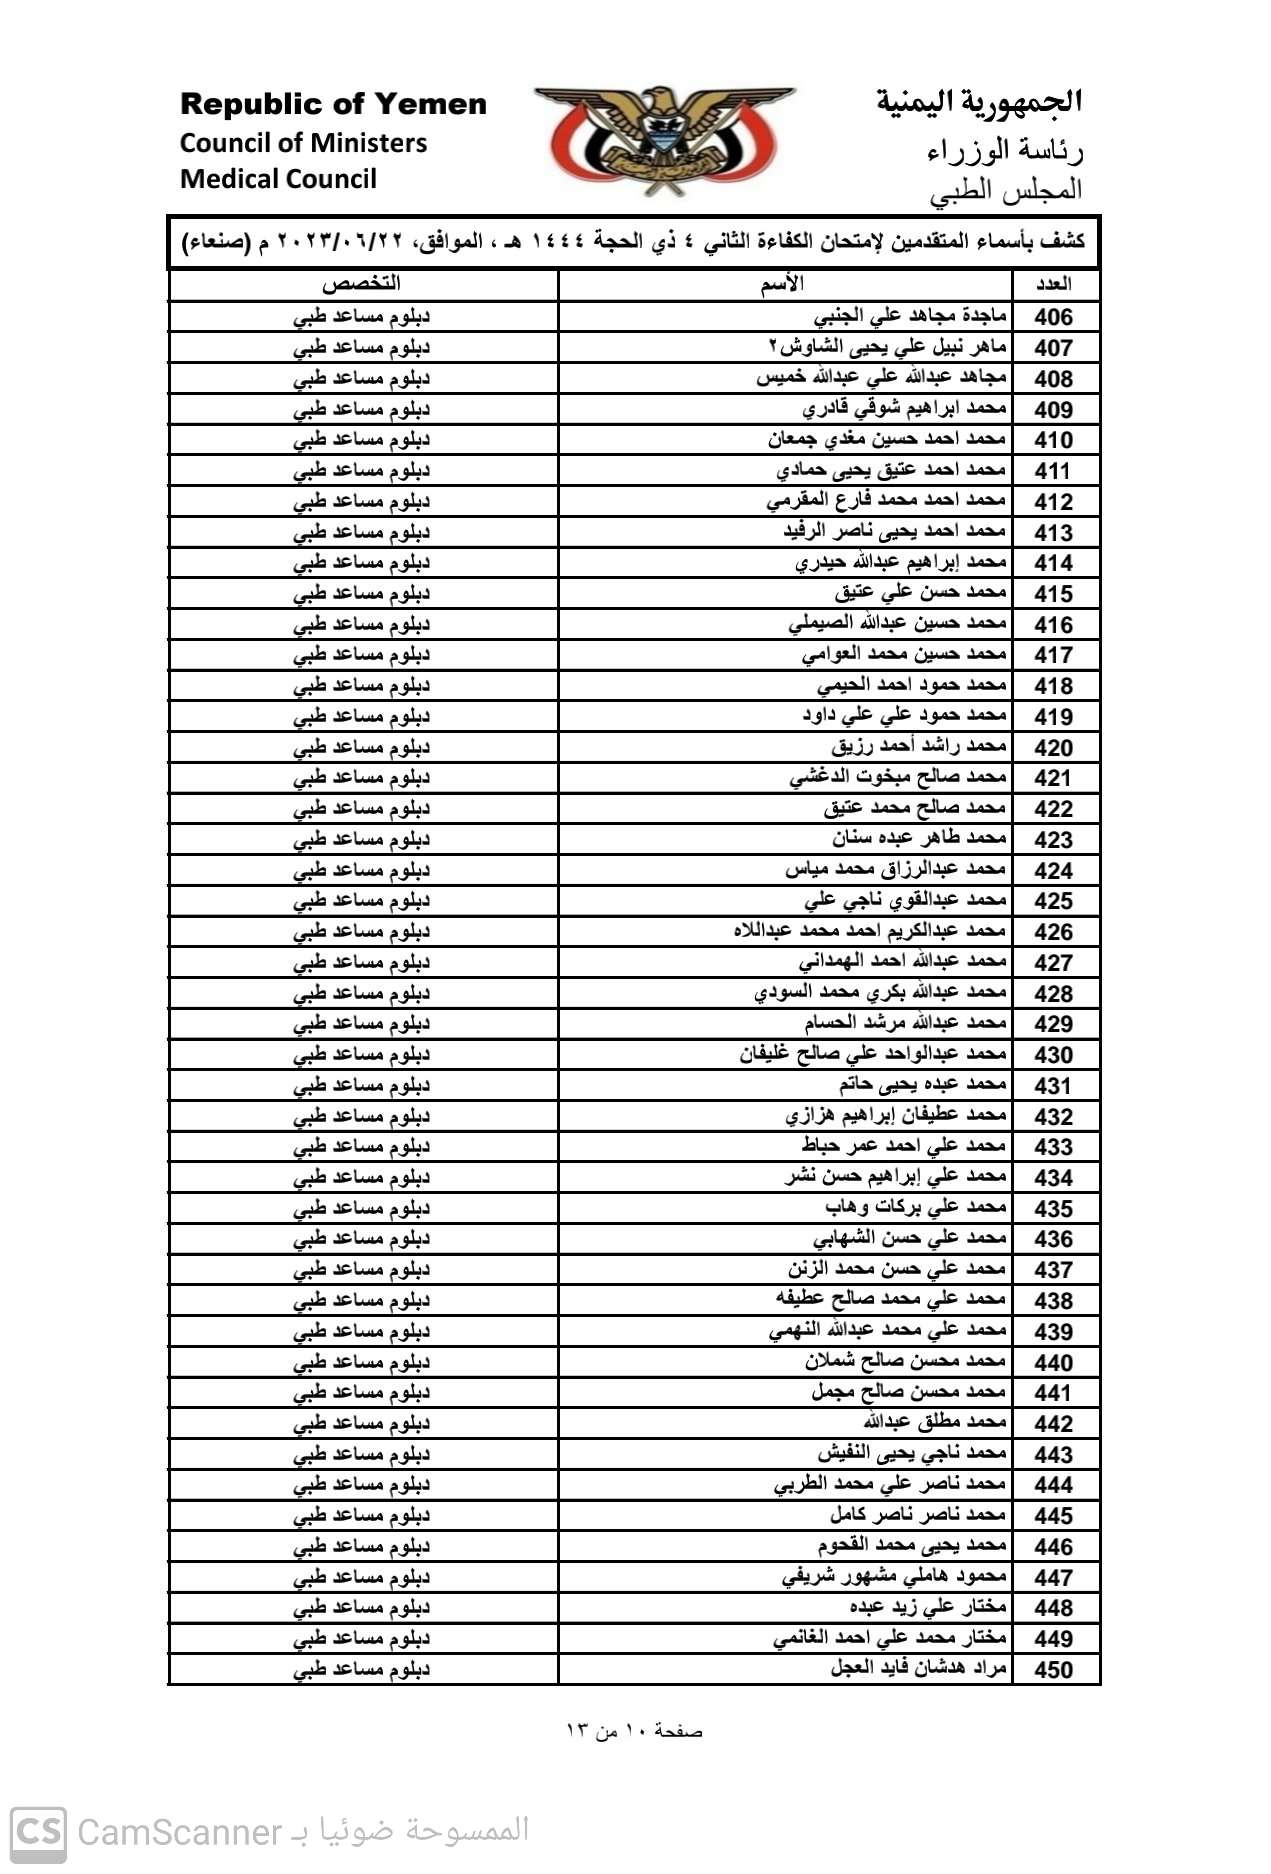 كشف باسماء المتقدمين لامتحان الكفاء الثاني 2023 بامانة العاصمة صنعاء للحصول على تراخيص مزاولة المهنة تخصص (دبلوم مساعد طبي)